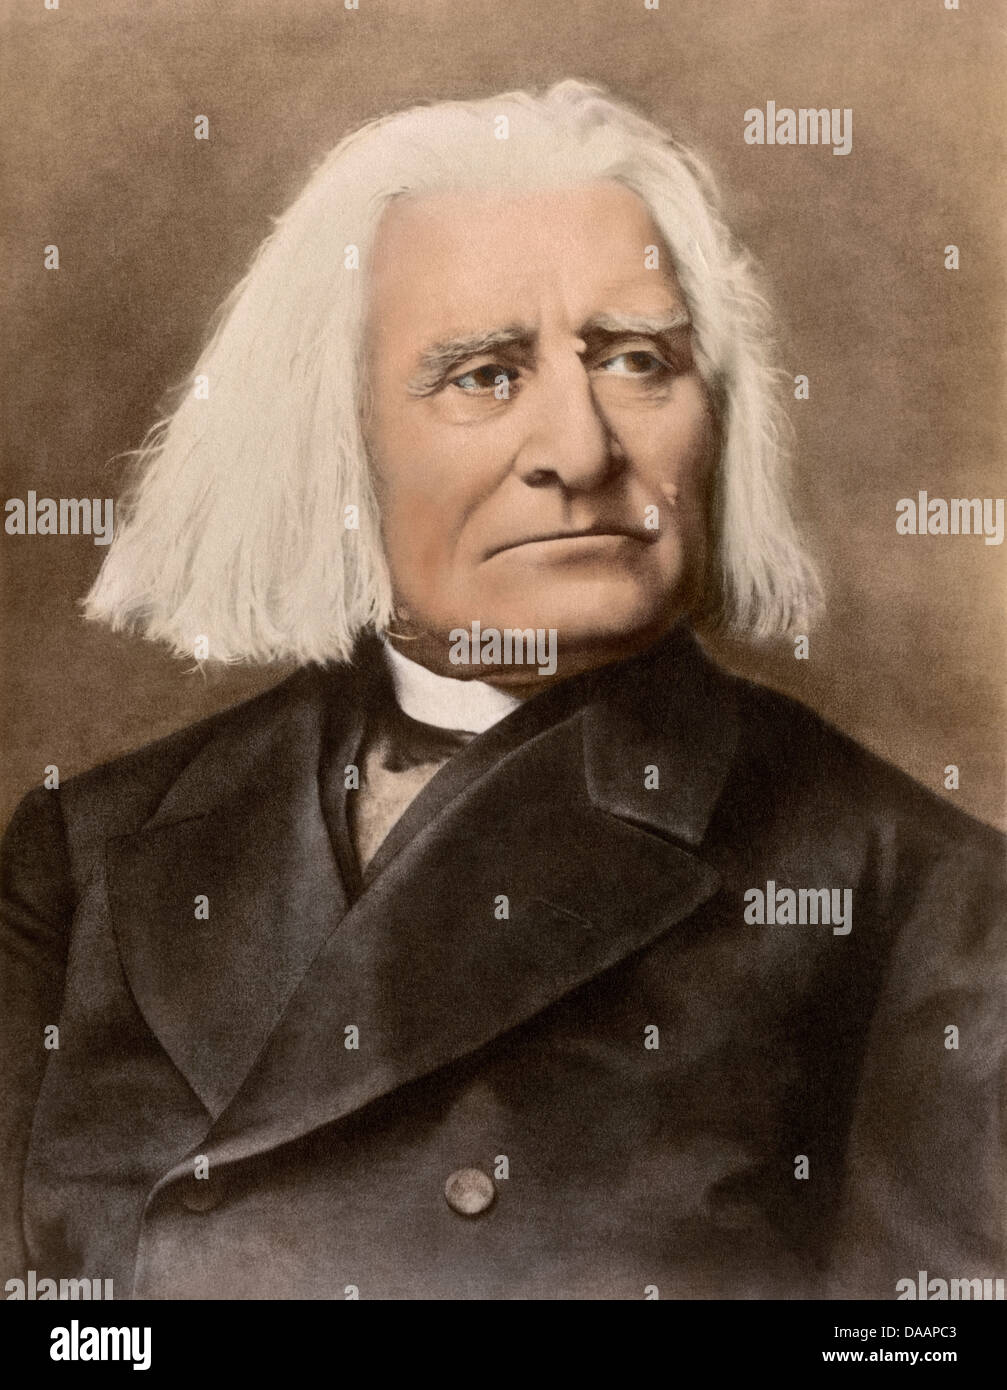 Ungarische Komponist und Dirigent Franz Liszt. Digital Farbfoto Stockfoto